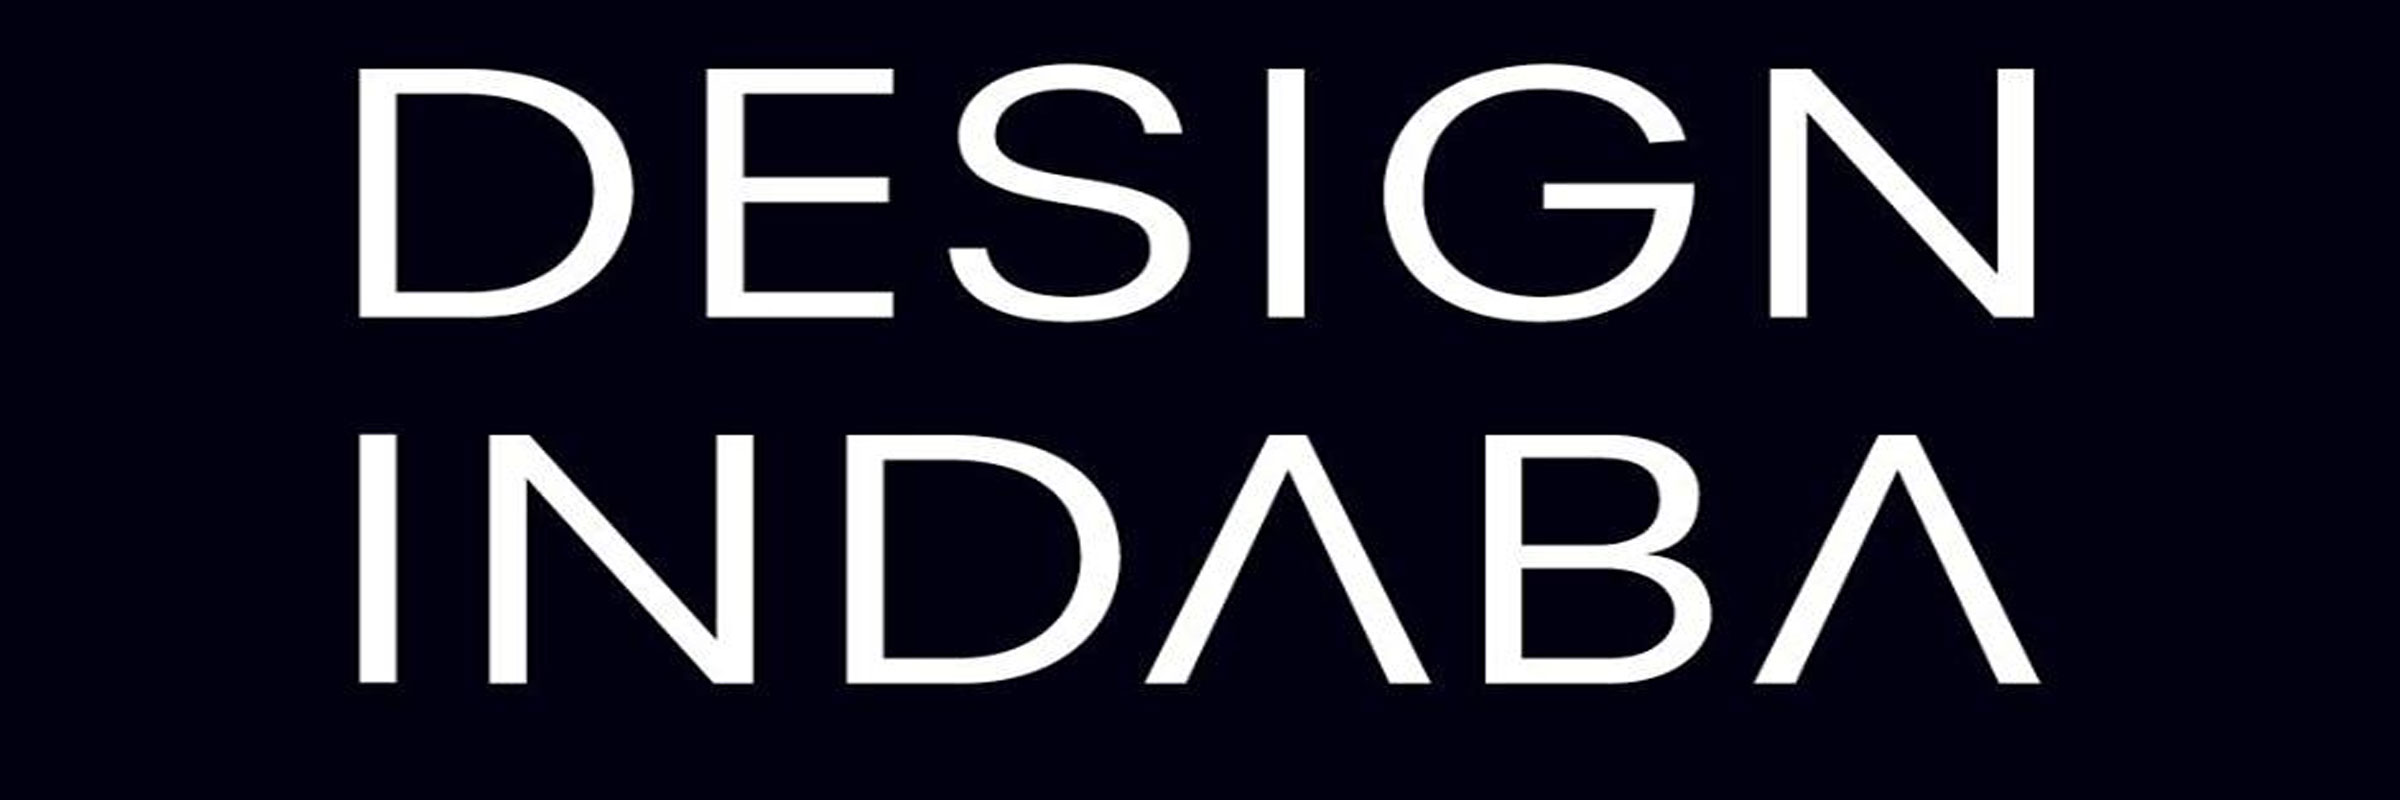 Design Indaba Simulcast 